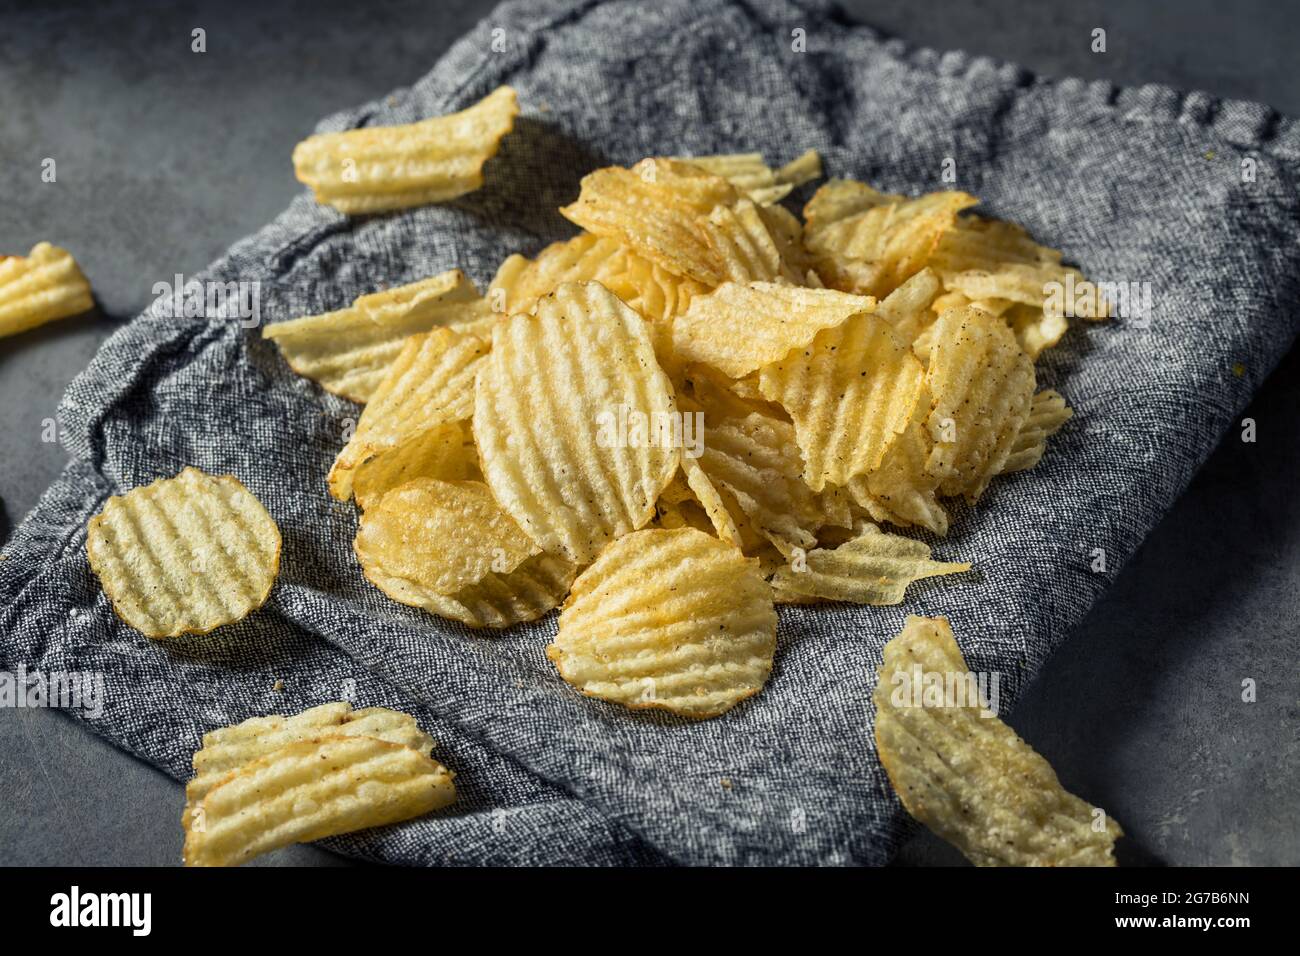 Fatty Ruffled Potato Chips Ready to Eat Stock Photo